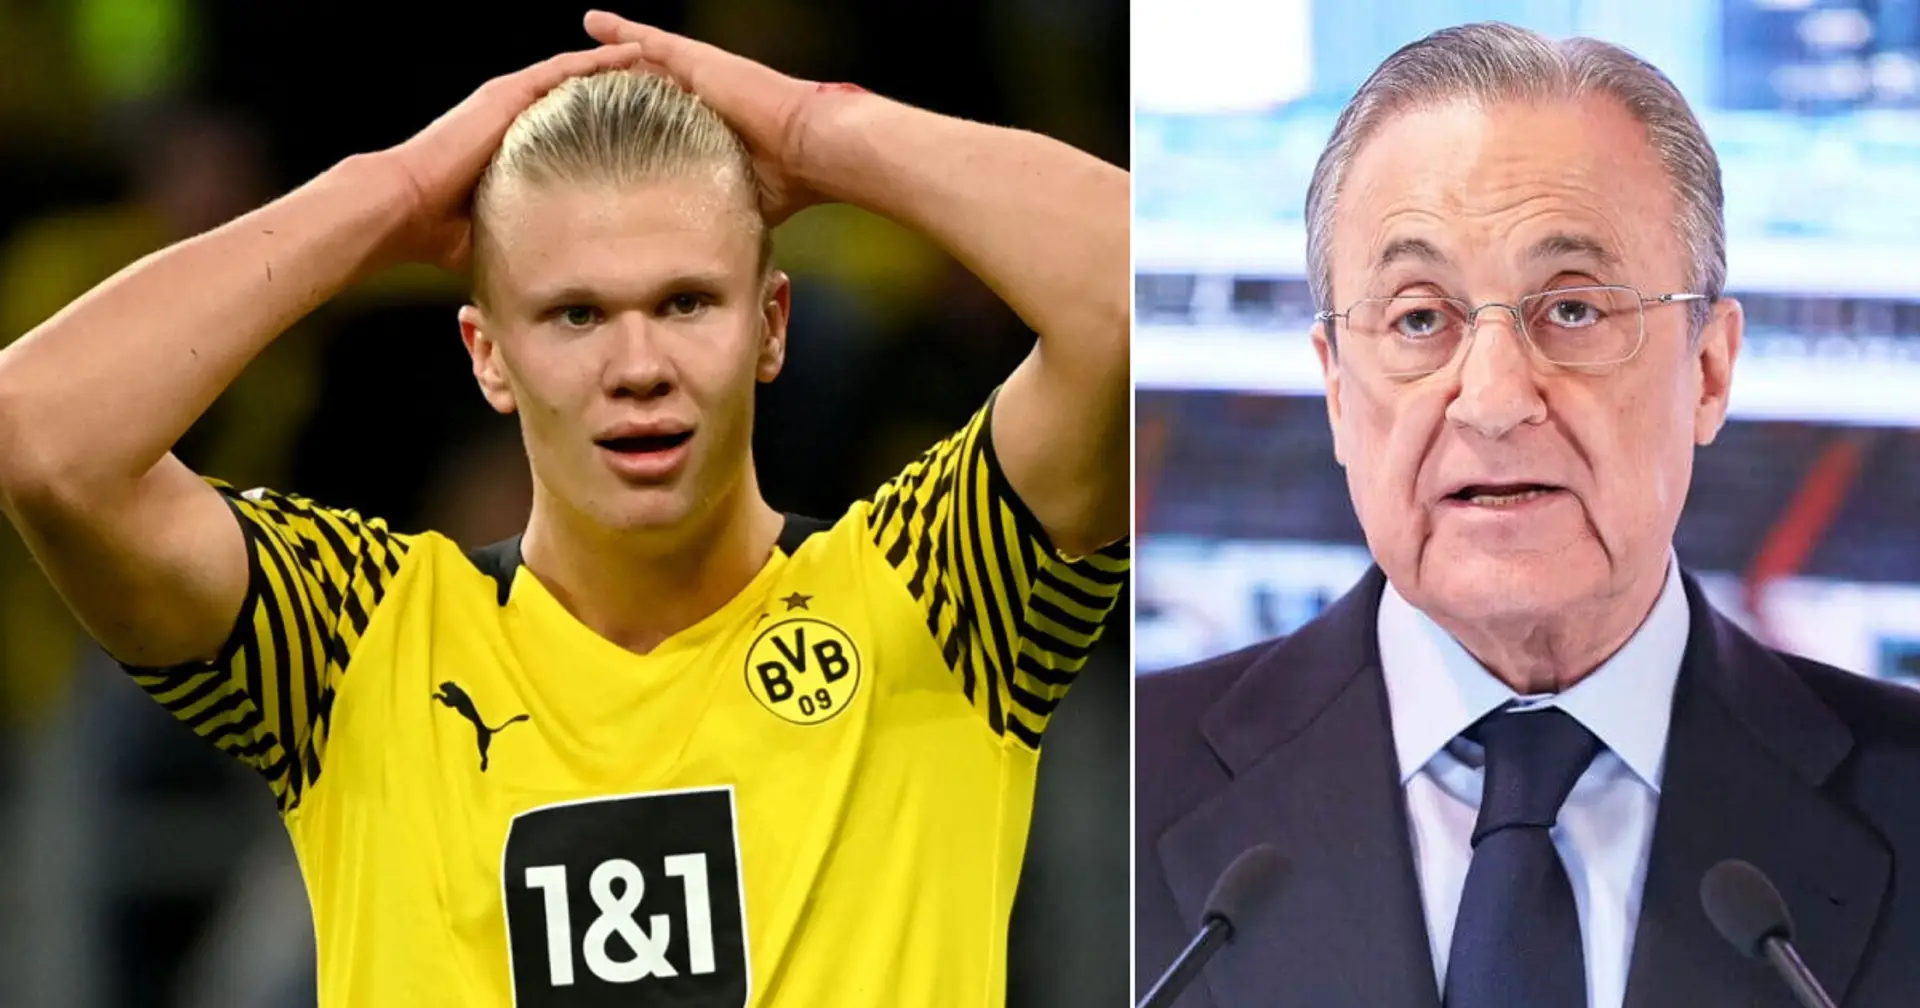 El Dortmund se prepara para duplicar el salario de Haaland para evitar el interés del Real Madrid (fiabilidad: 4 estrellas)